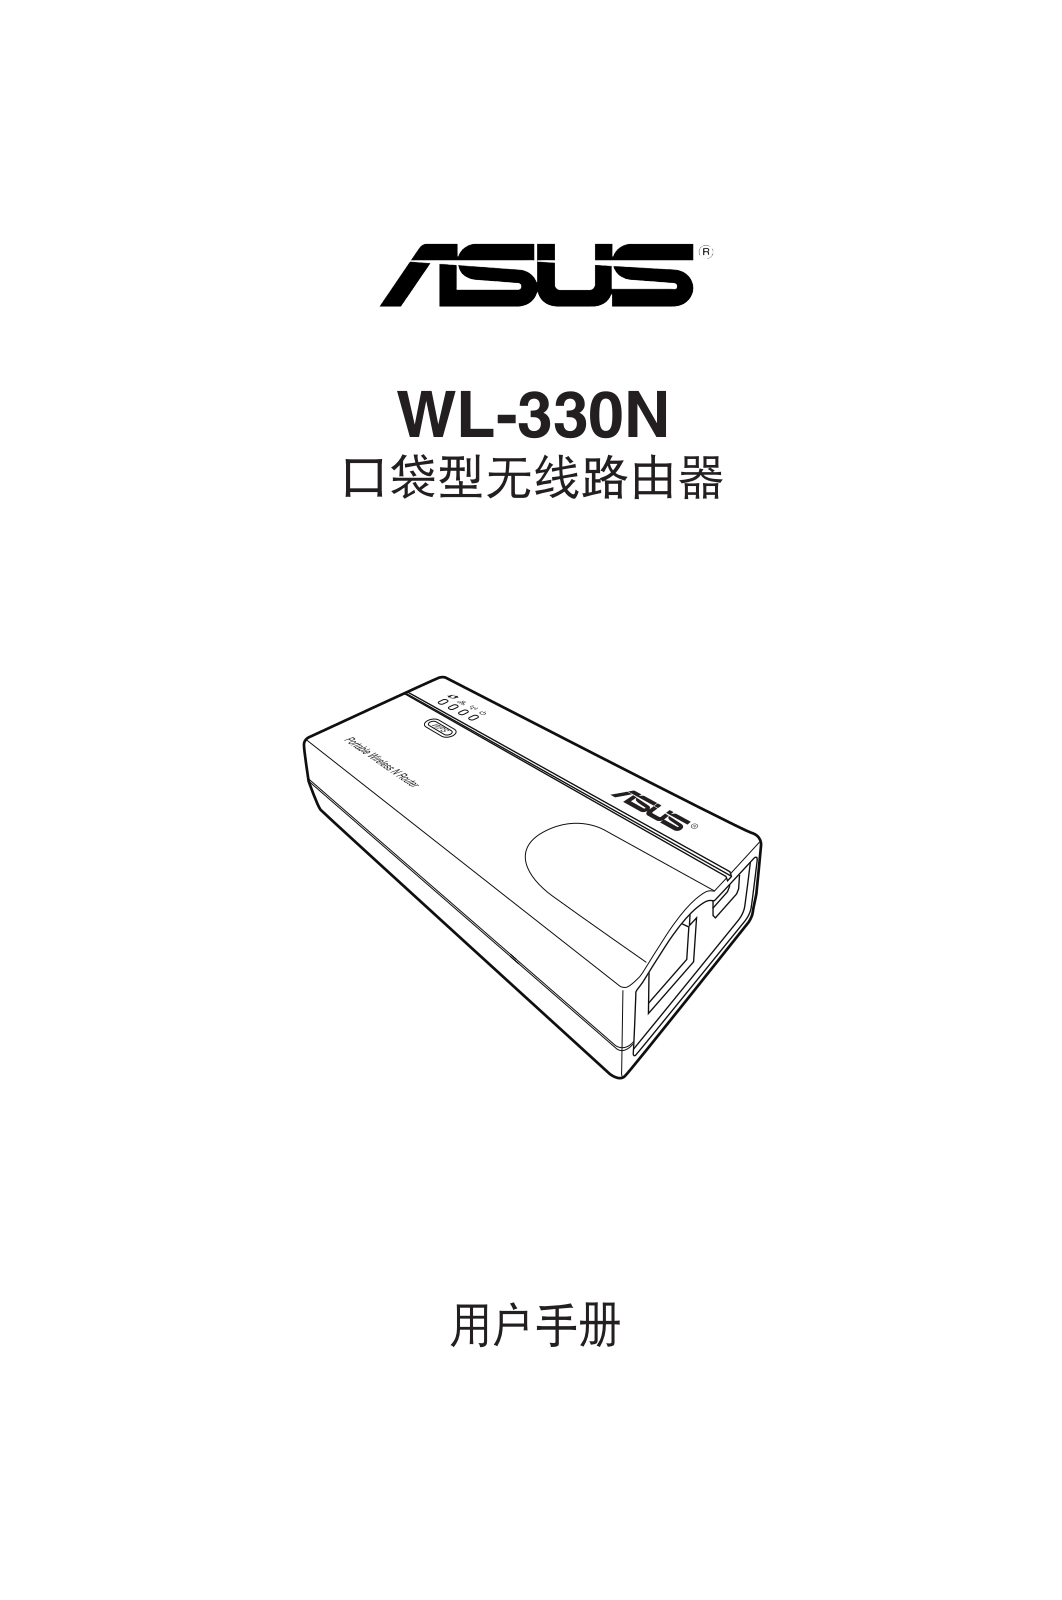 ASUS WL-330N, C6757 User Manual